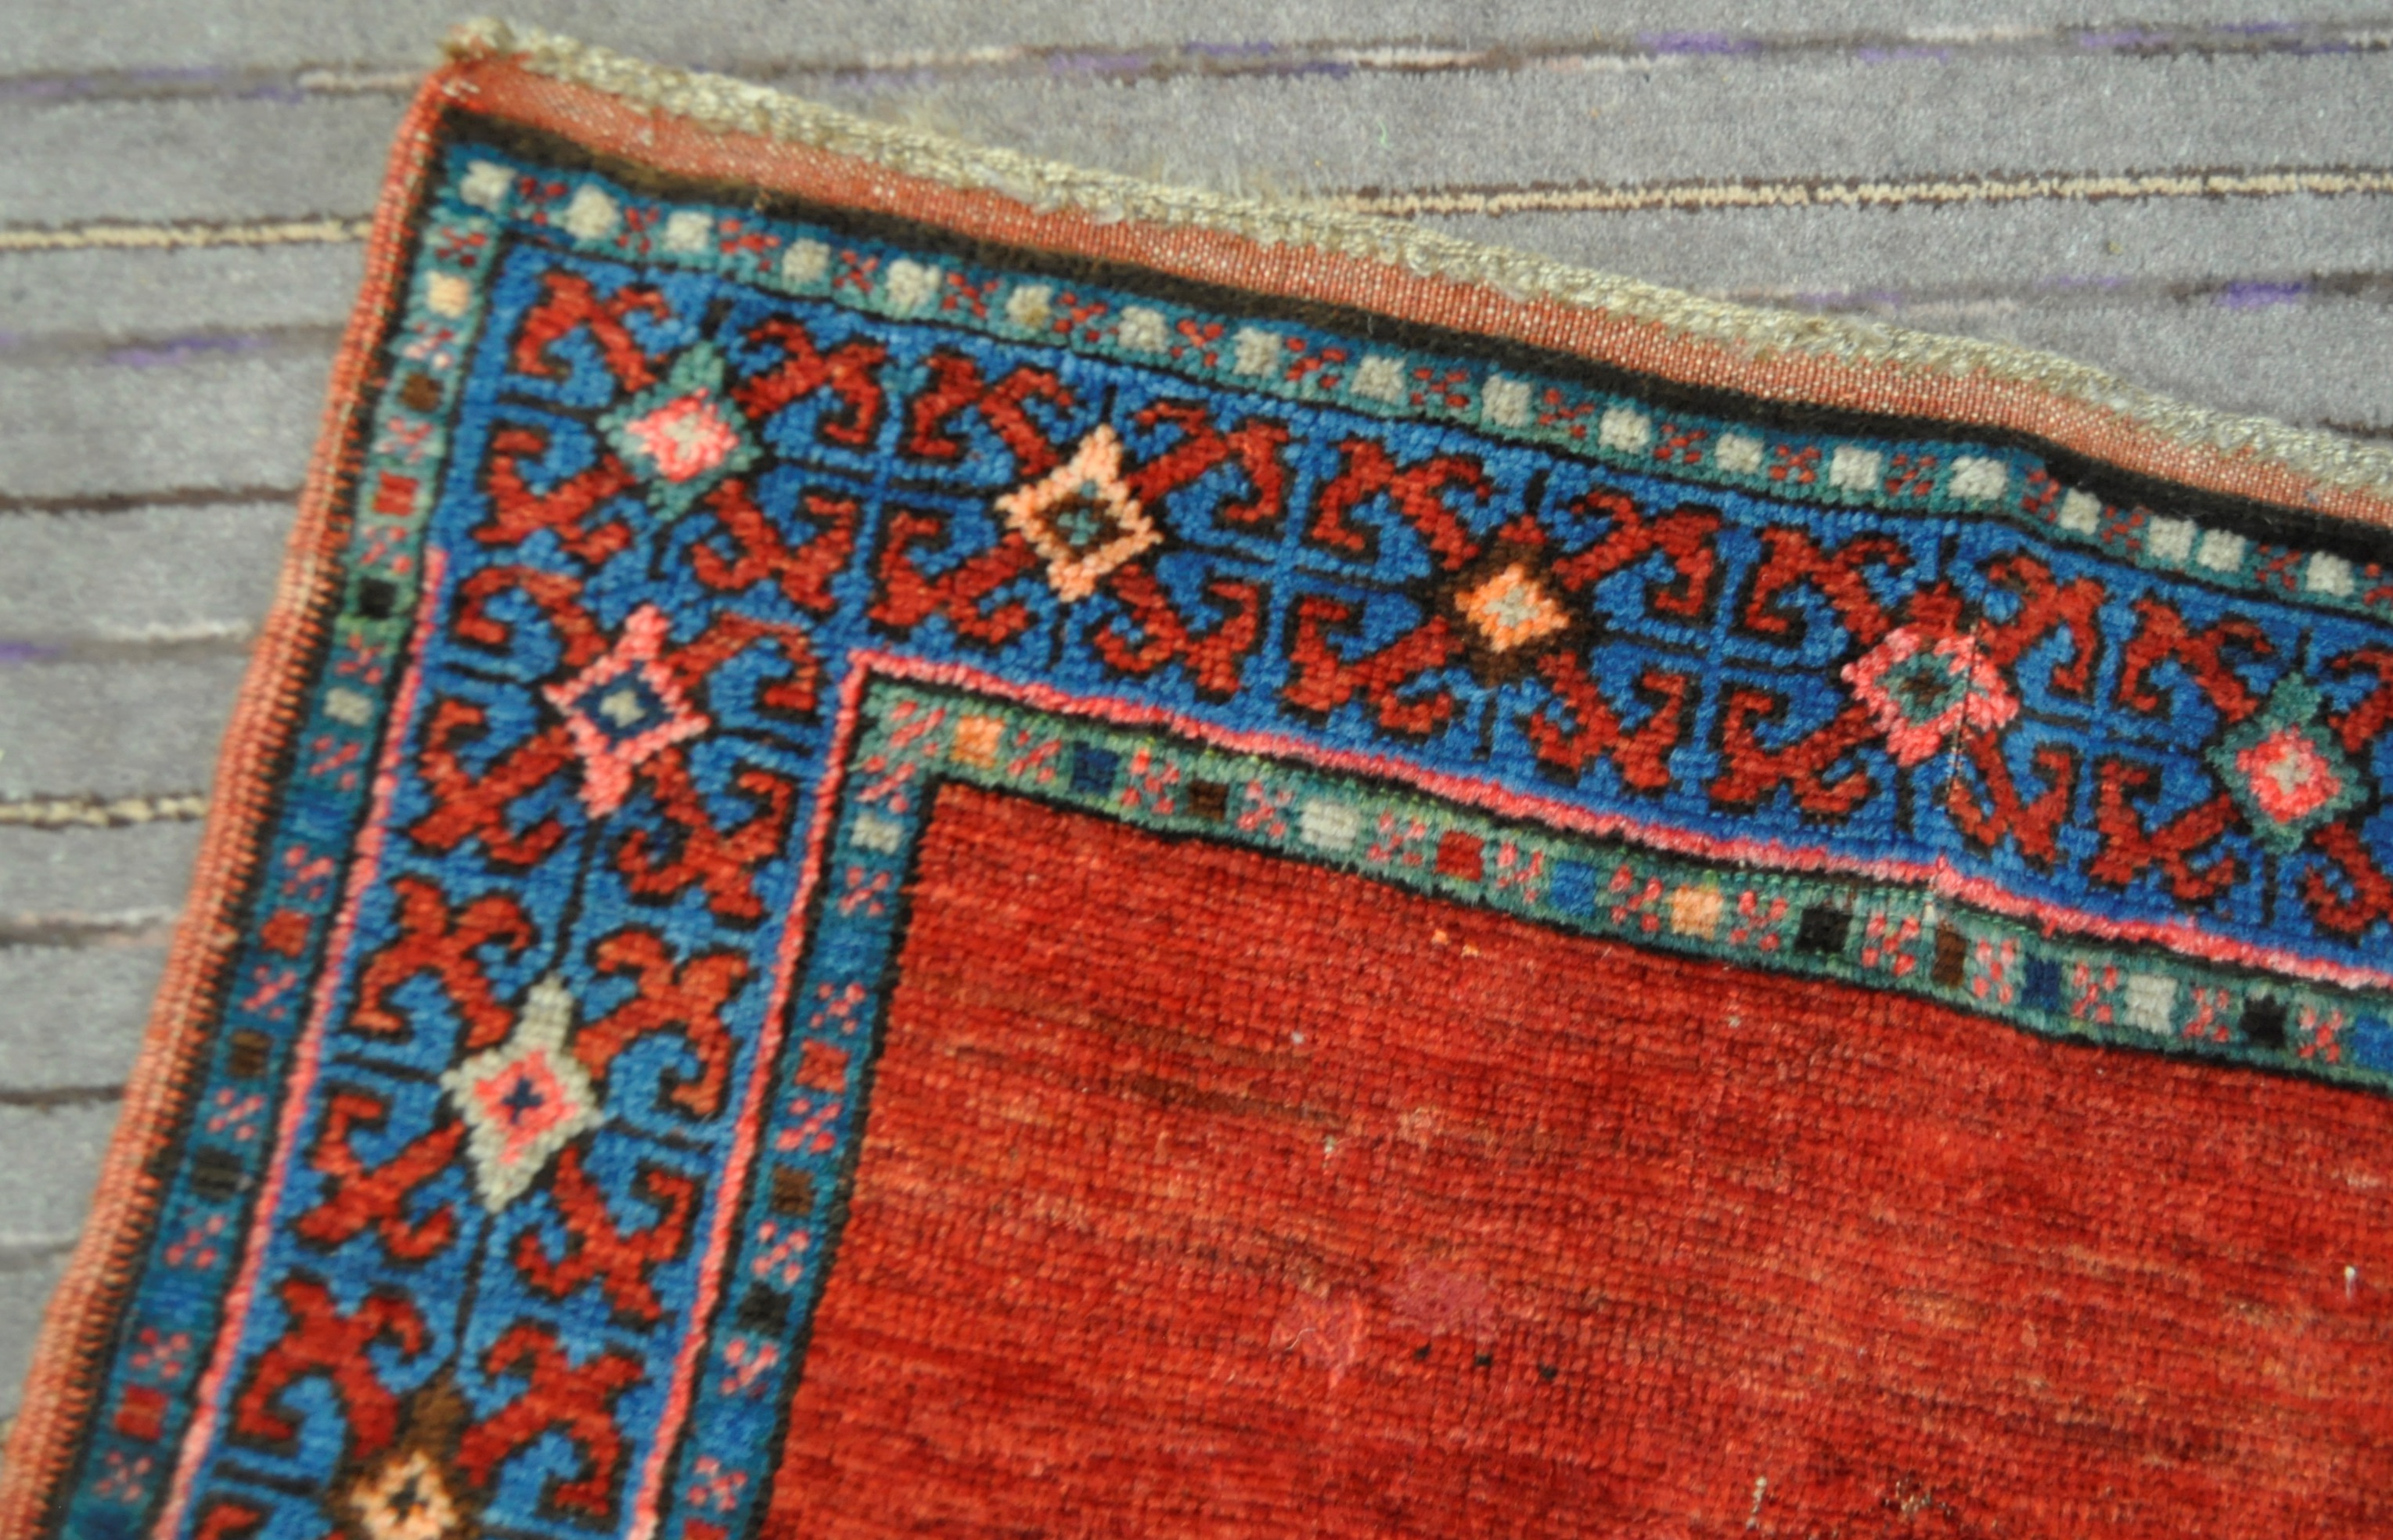 19TH CENTURY PERSIAN KAZAK WOOL CARPET RUG - Image 3 of 7